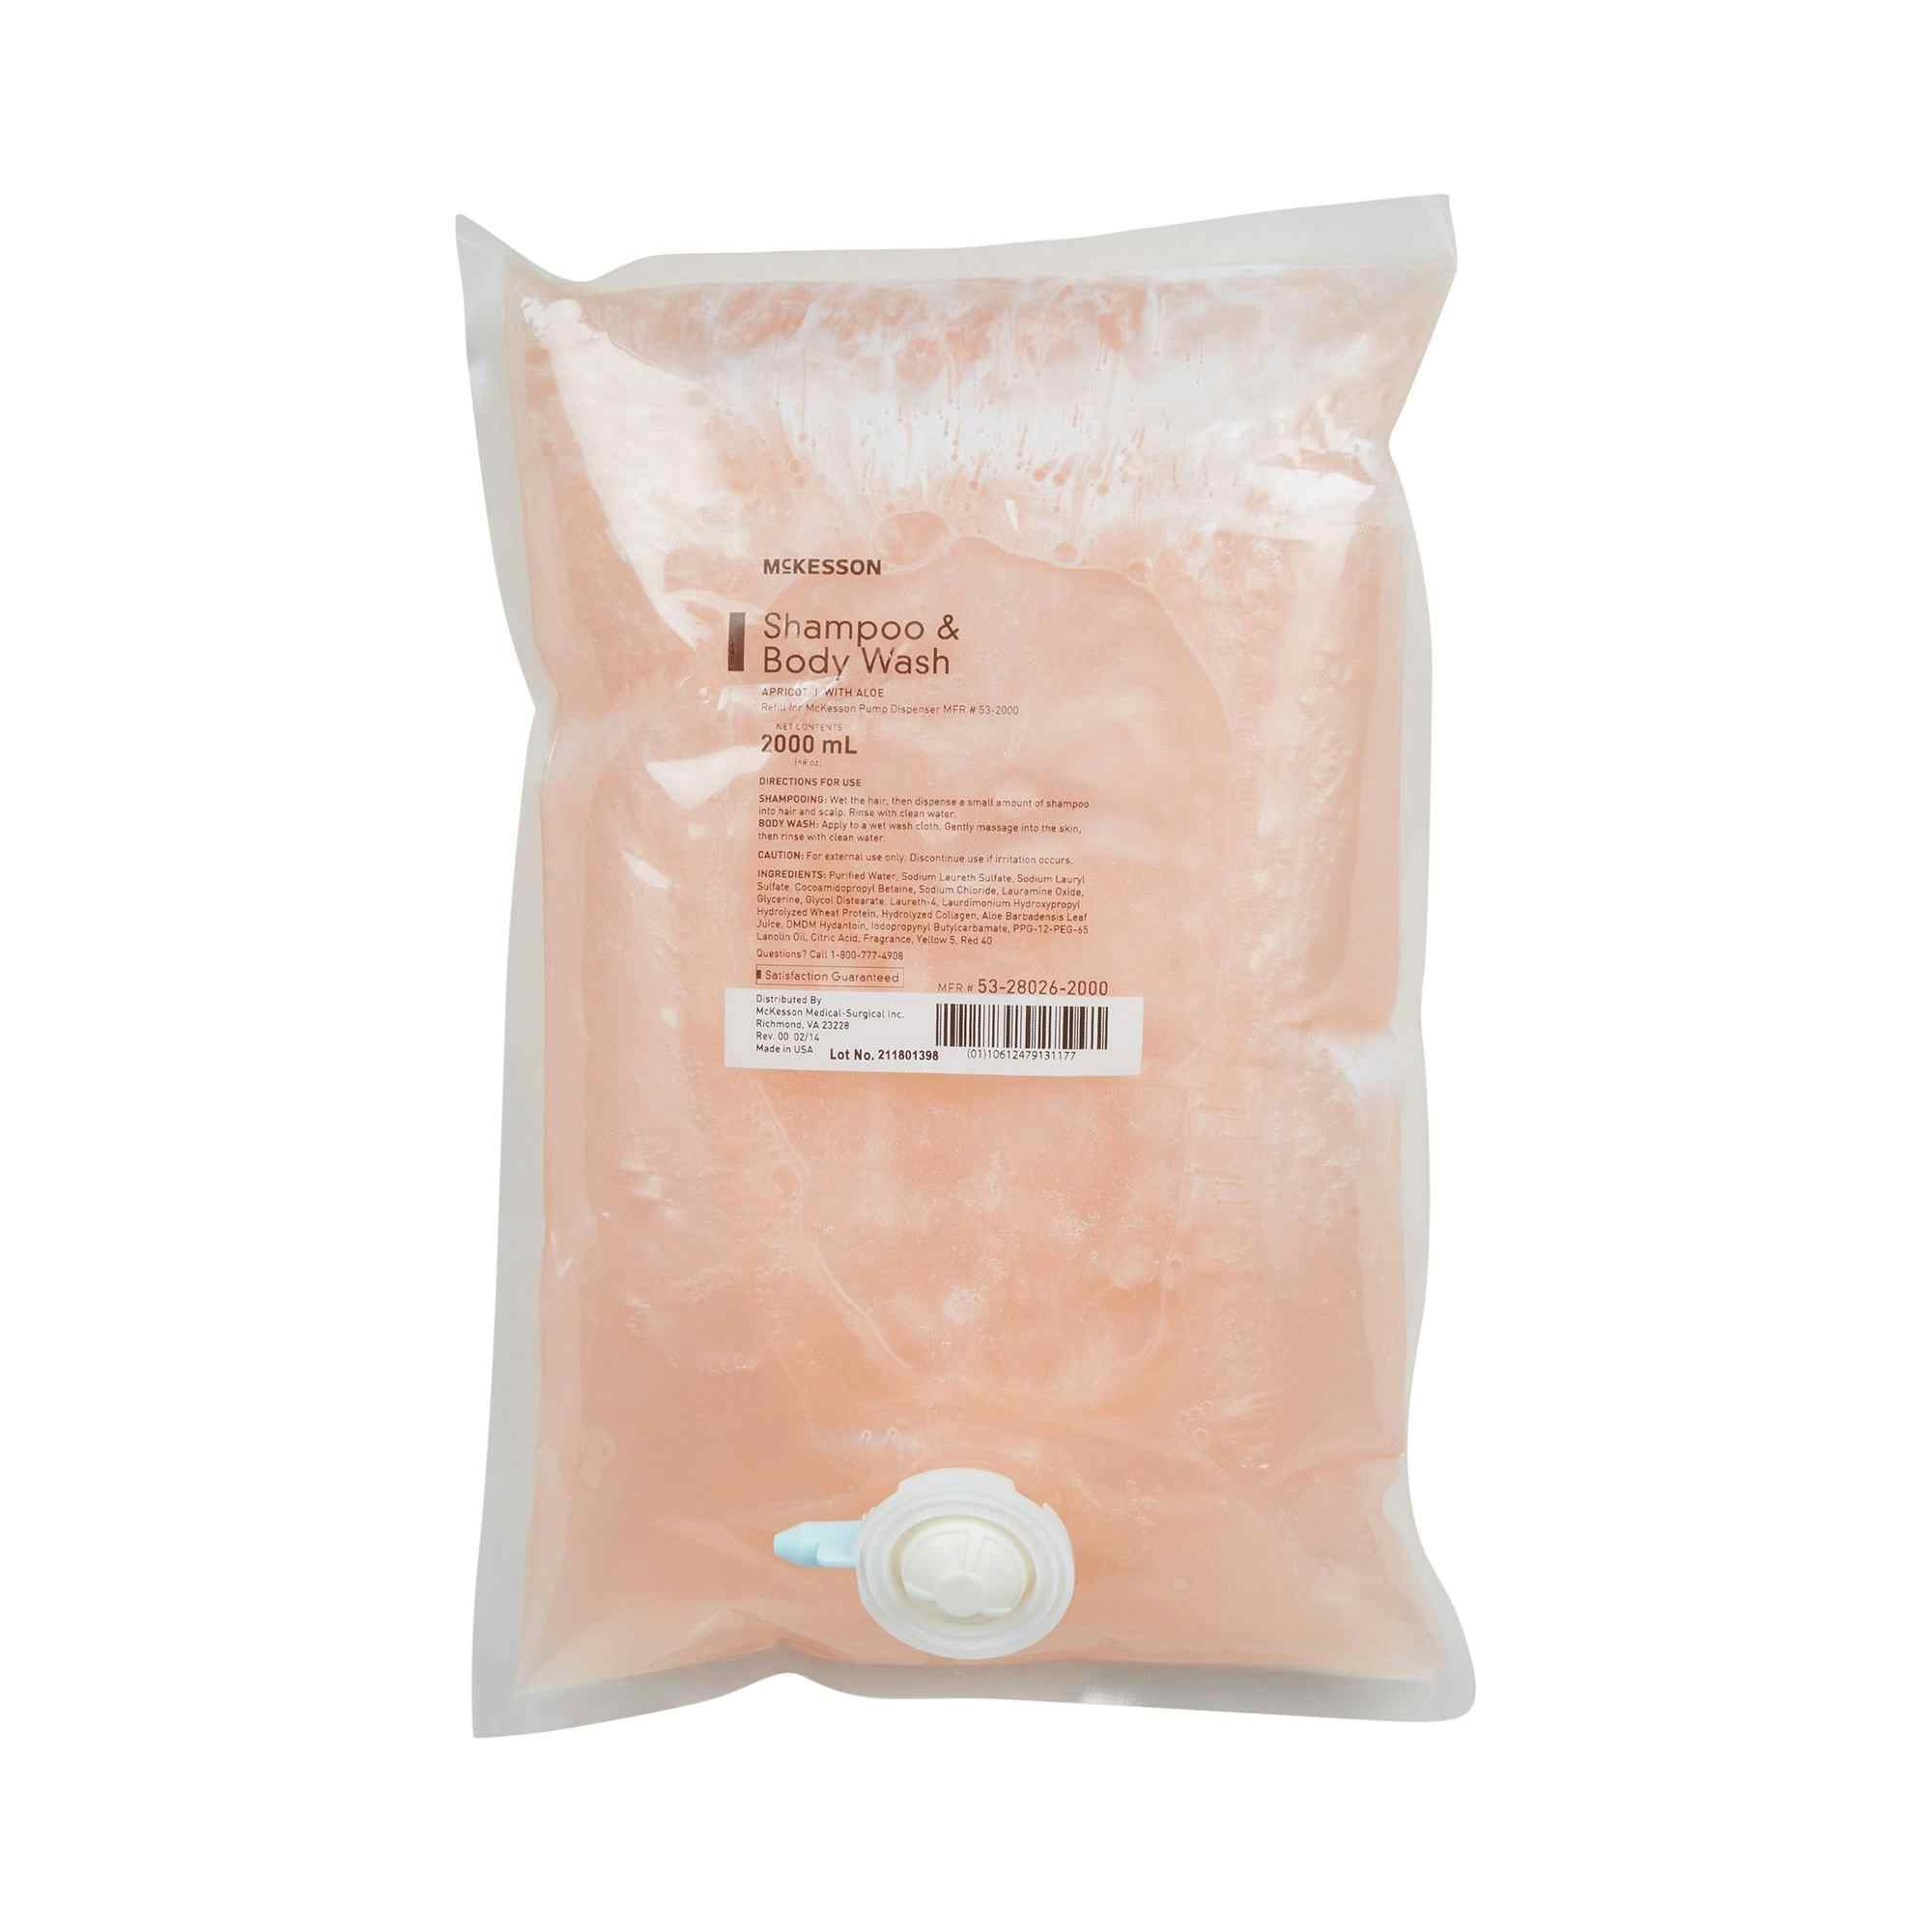 McKesson Shampoo and Body Wash Refill, Apricot Scent